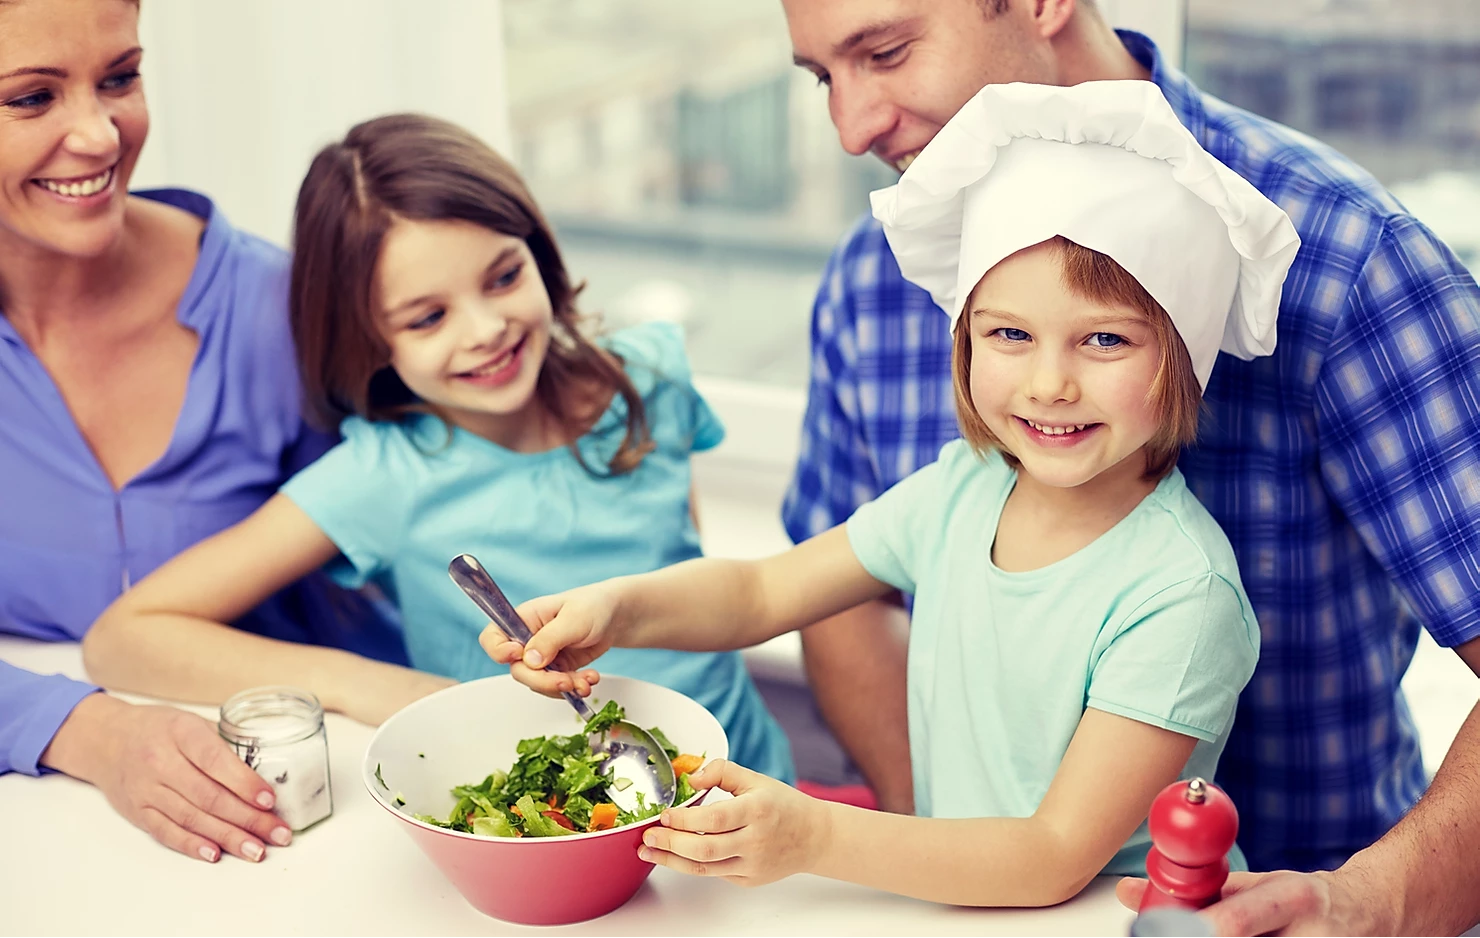 Видеоролик традиции семьи. Обед для детей. Здоровое питание в семье. Семья на кухне. Совместная готовка с детьми.